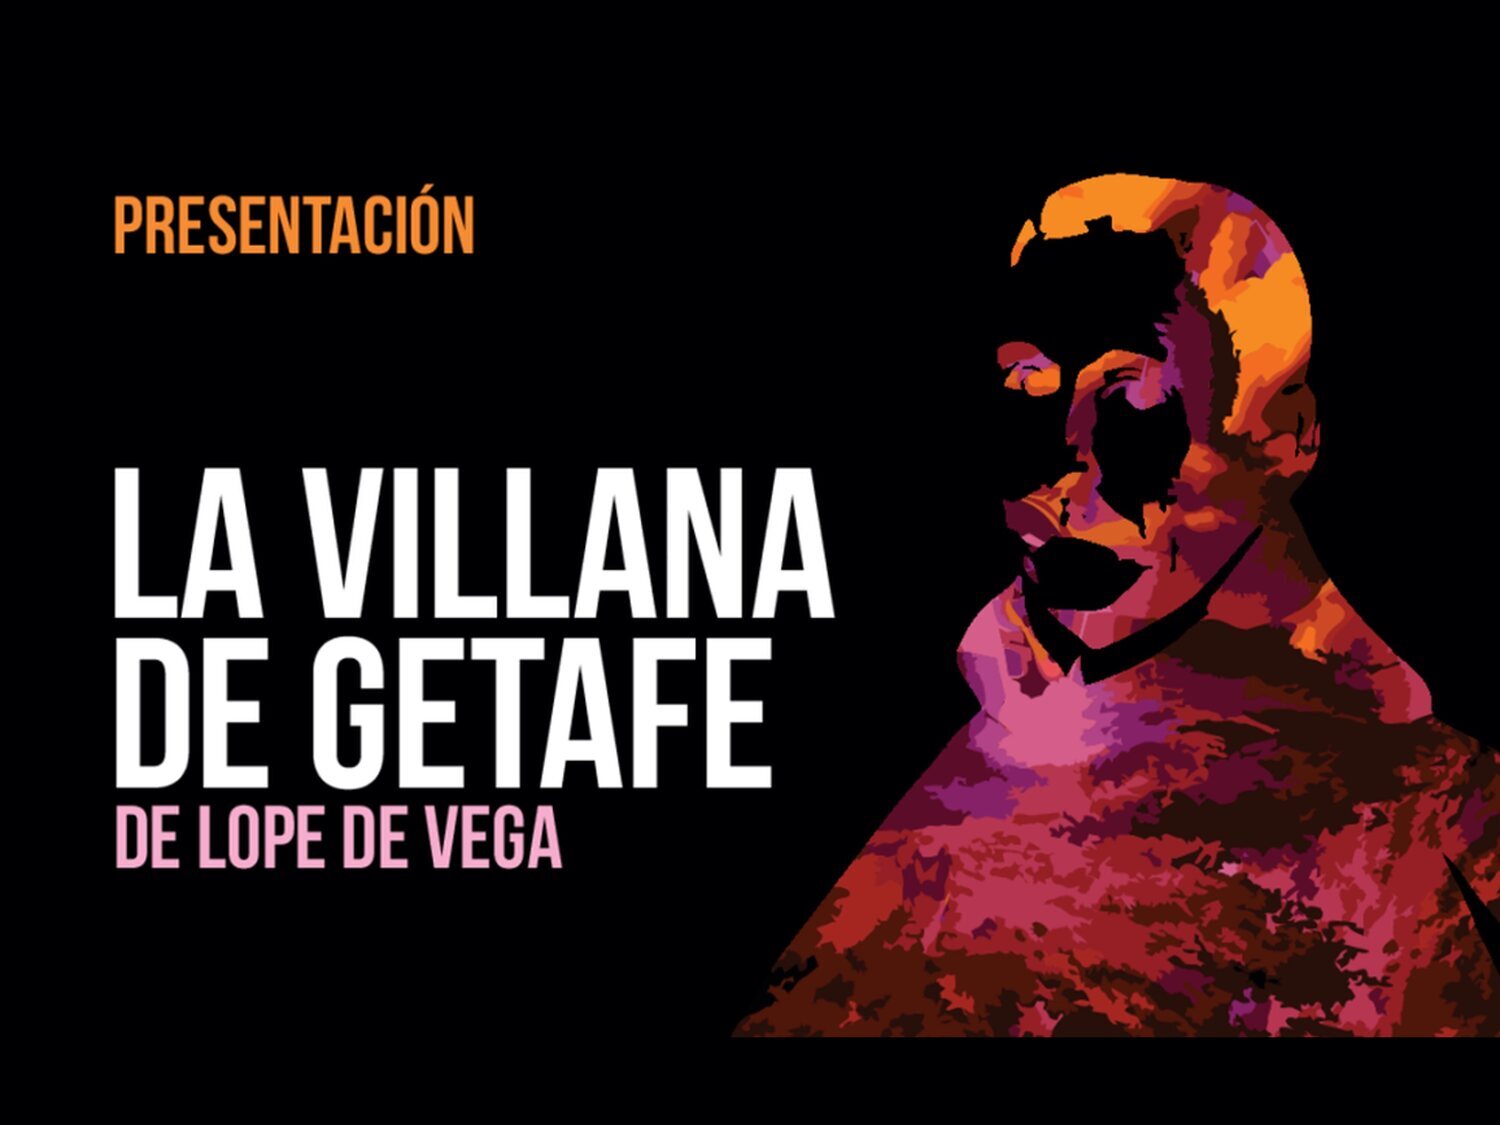 VOX exige censurar una representación de 'La Villana de Getafe' de Lope de Vega por "insinuaciones sexuales"